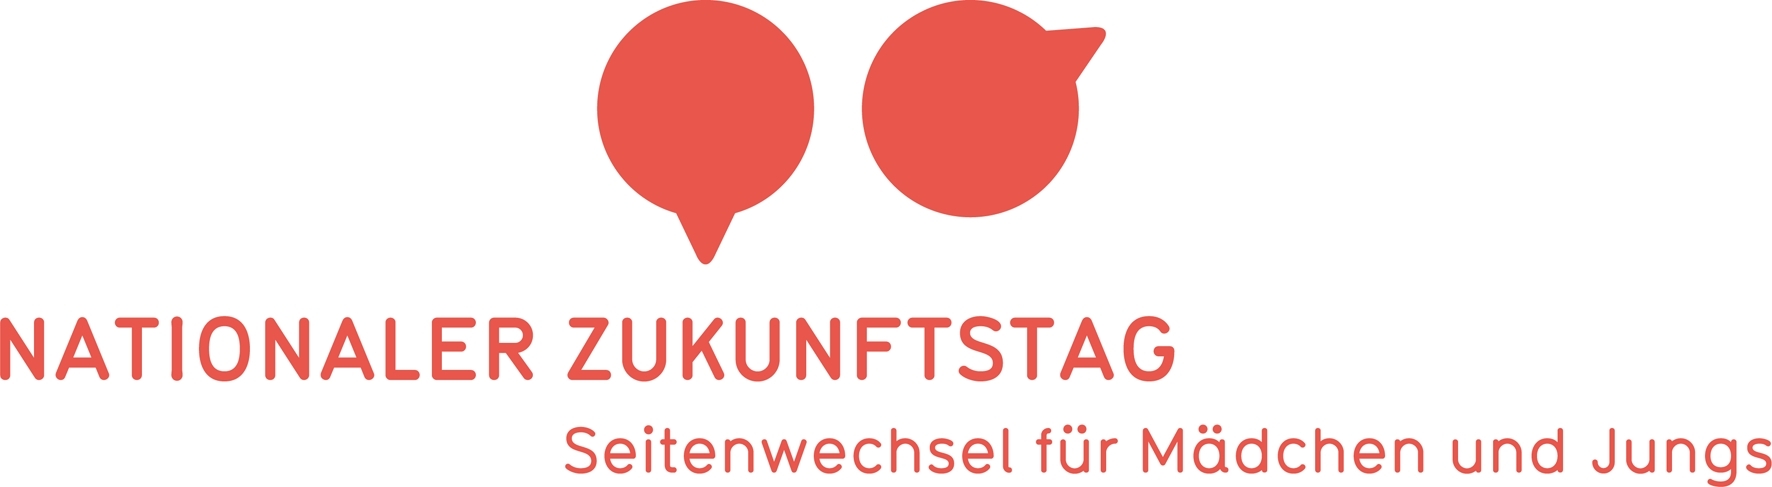 Zukunftstag_logo2